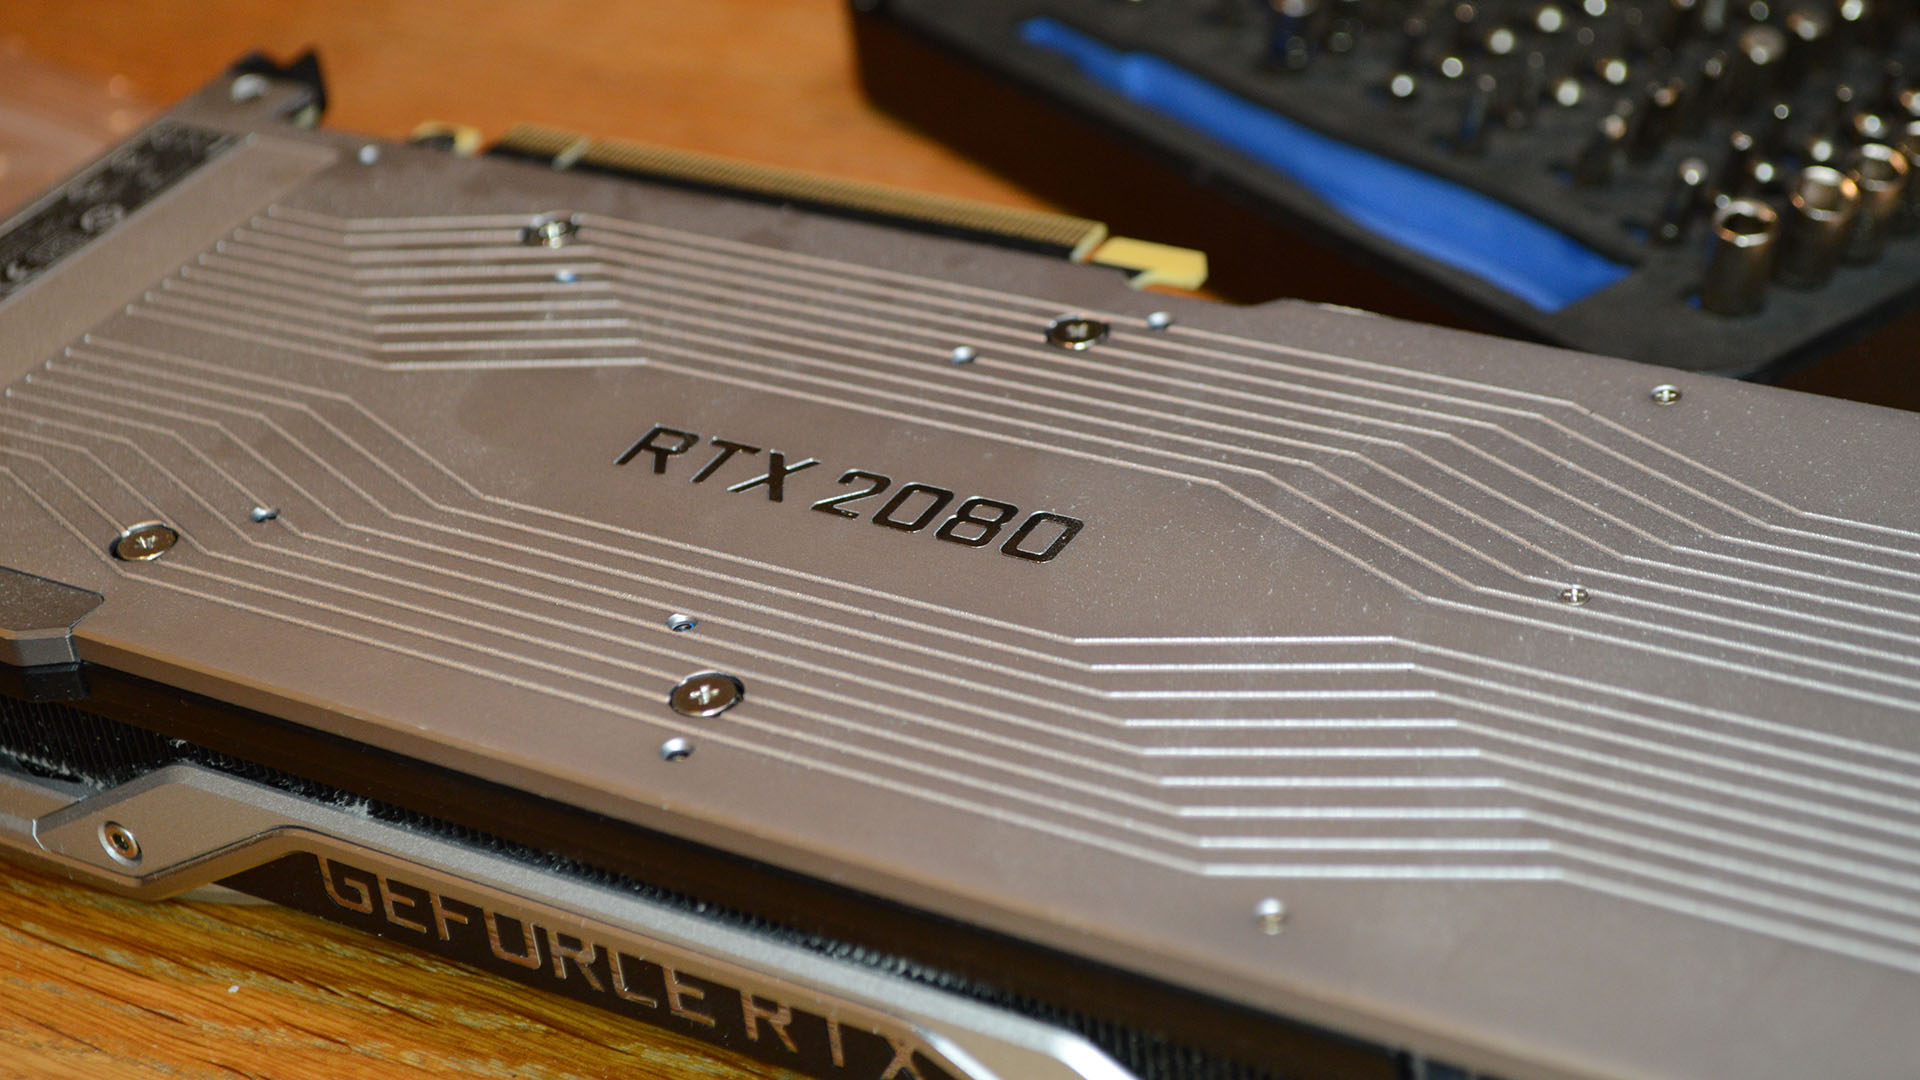 Nvidia RTX 2080 teardown